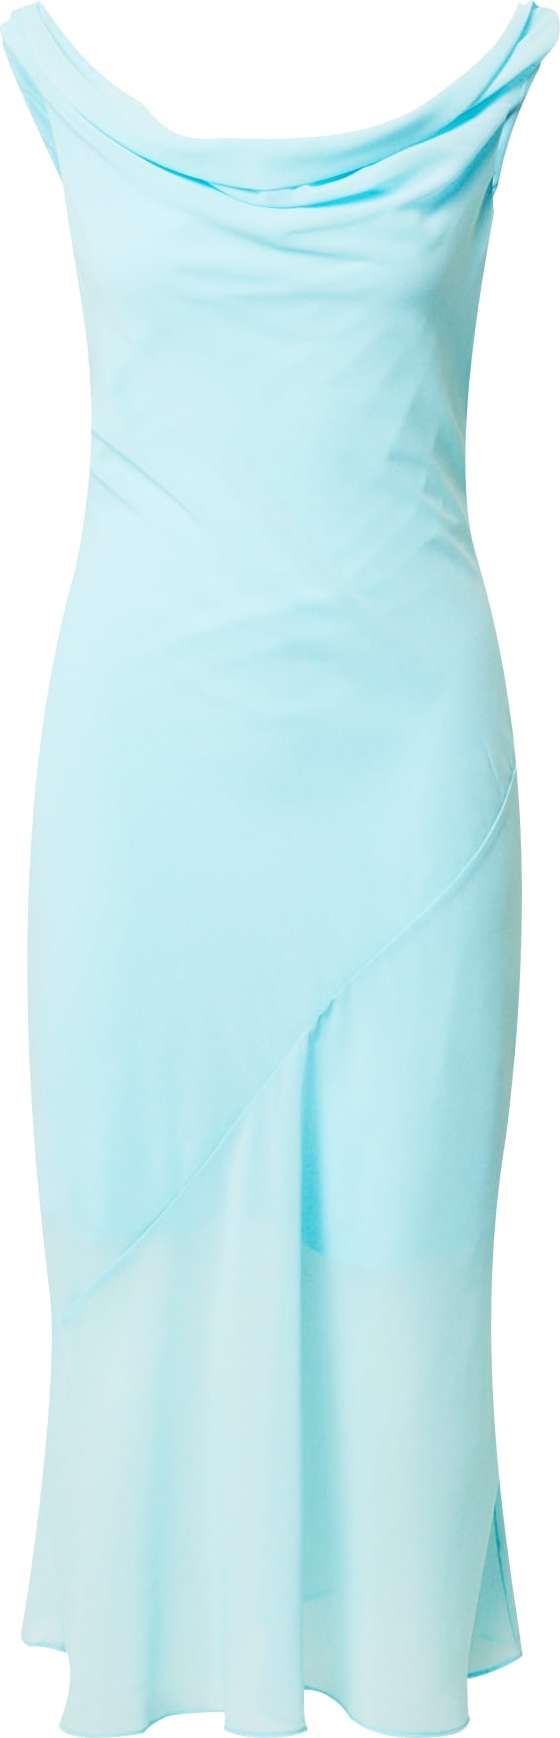 Letní šaty Abercrombie & Fitch aqua modrá